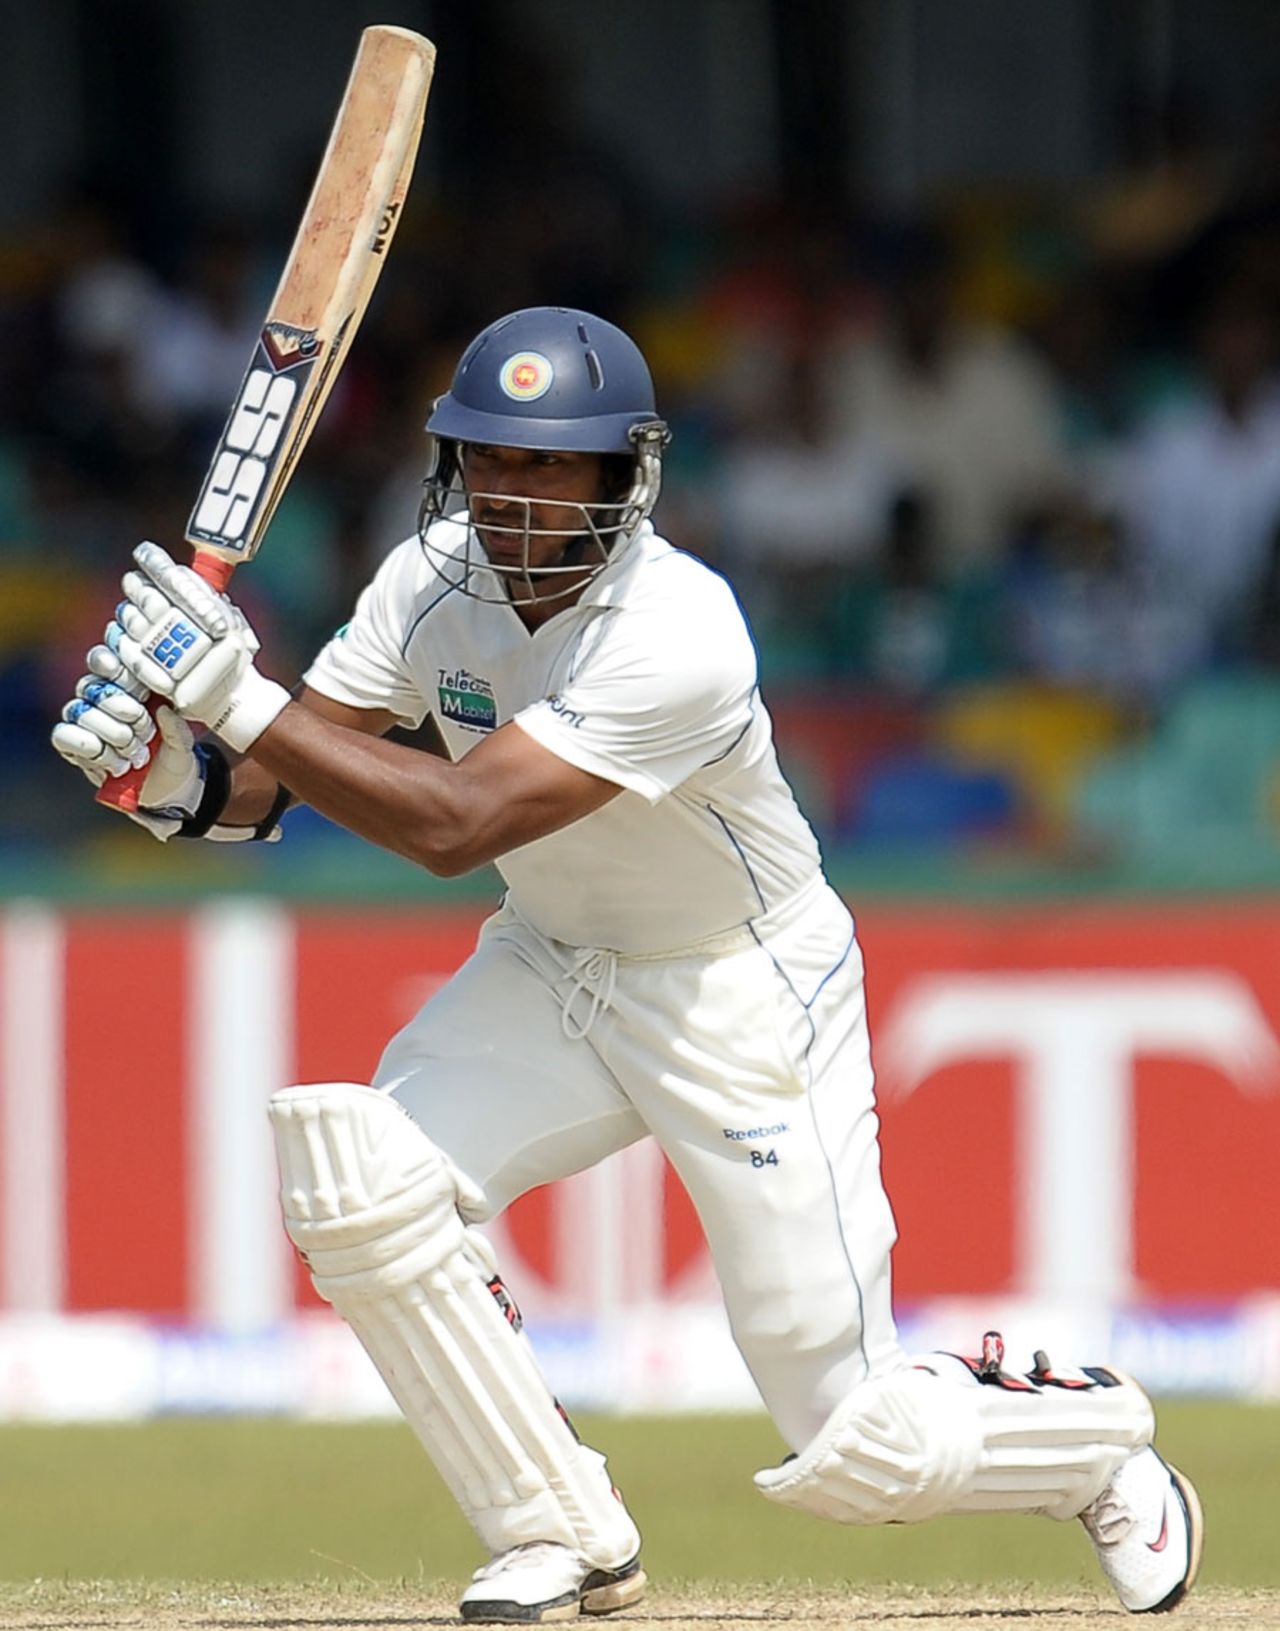 Kumar Sangakkara scored 79 before he was dismissed by Peter Siddle, Sri Lanka v Australia, 3rd Test, SSC, Colombo, 3rd day, September 18, 2011